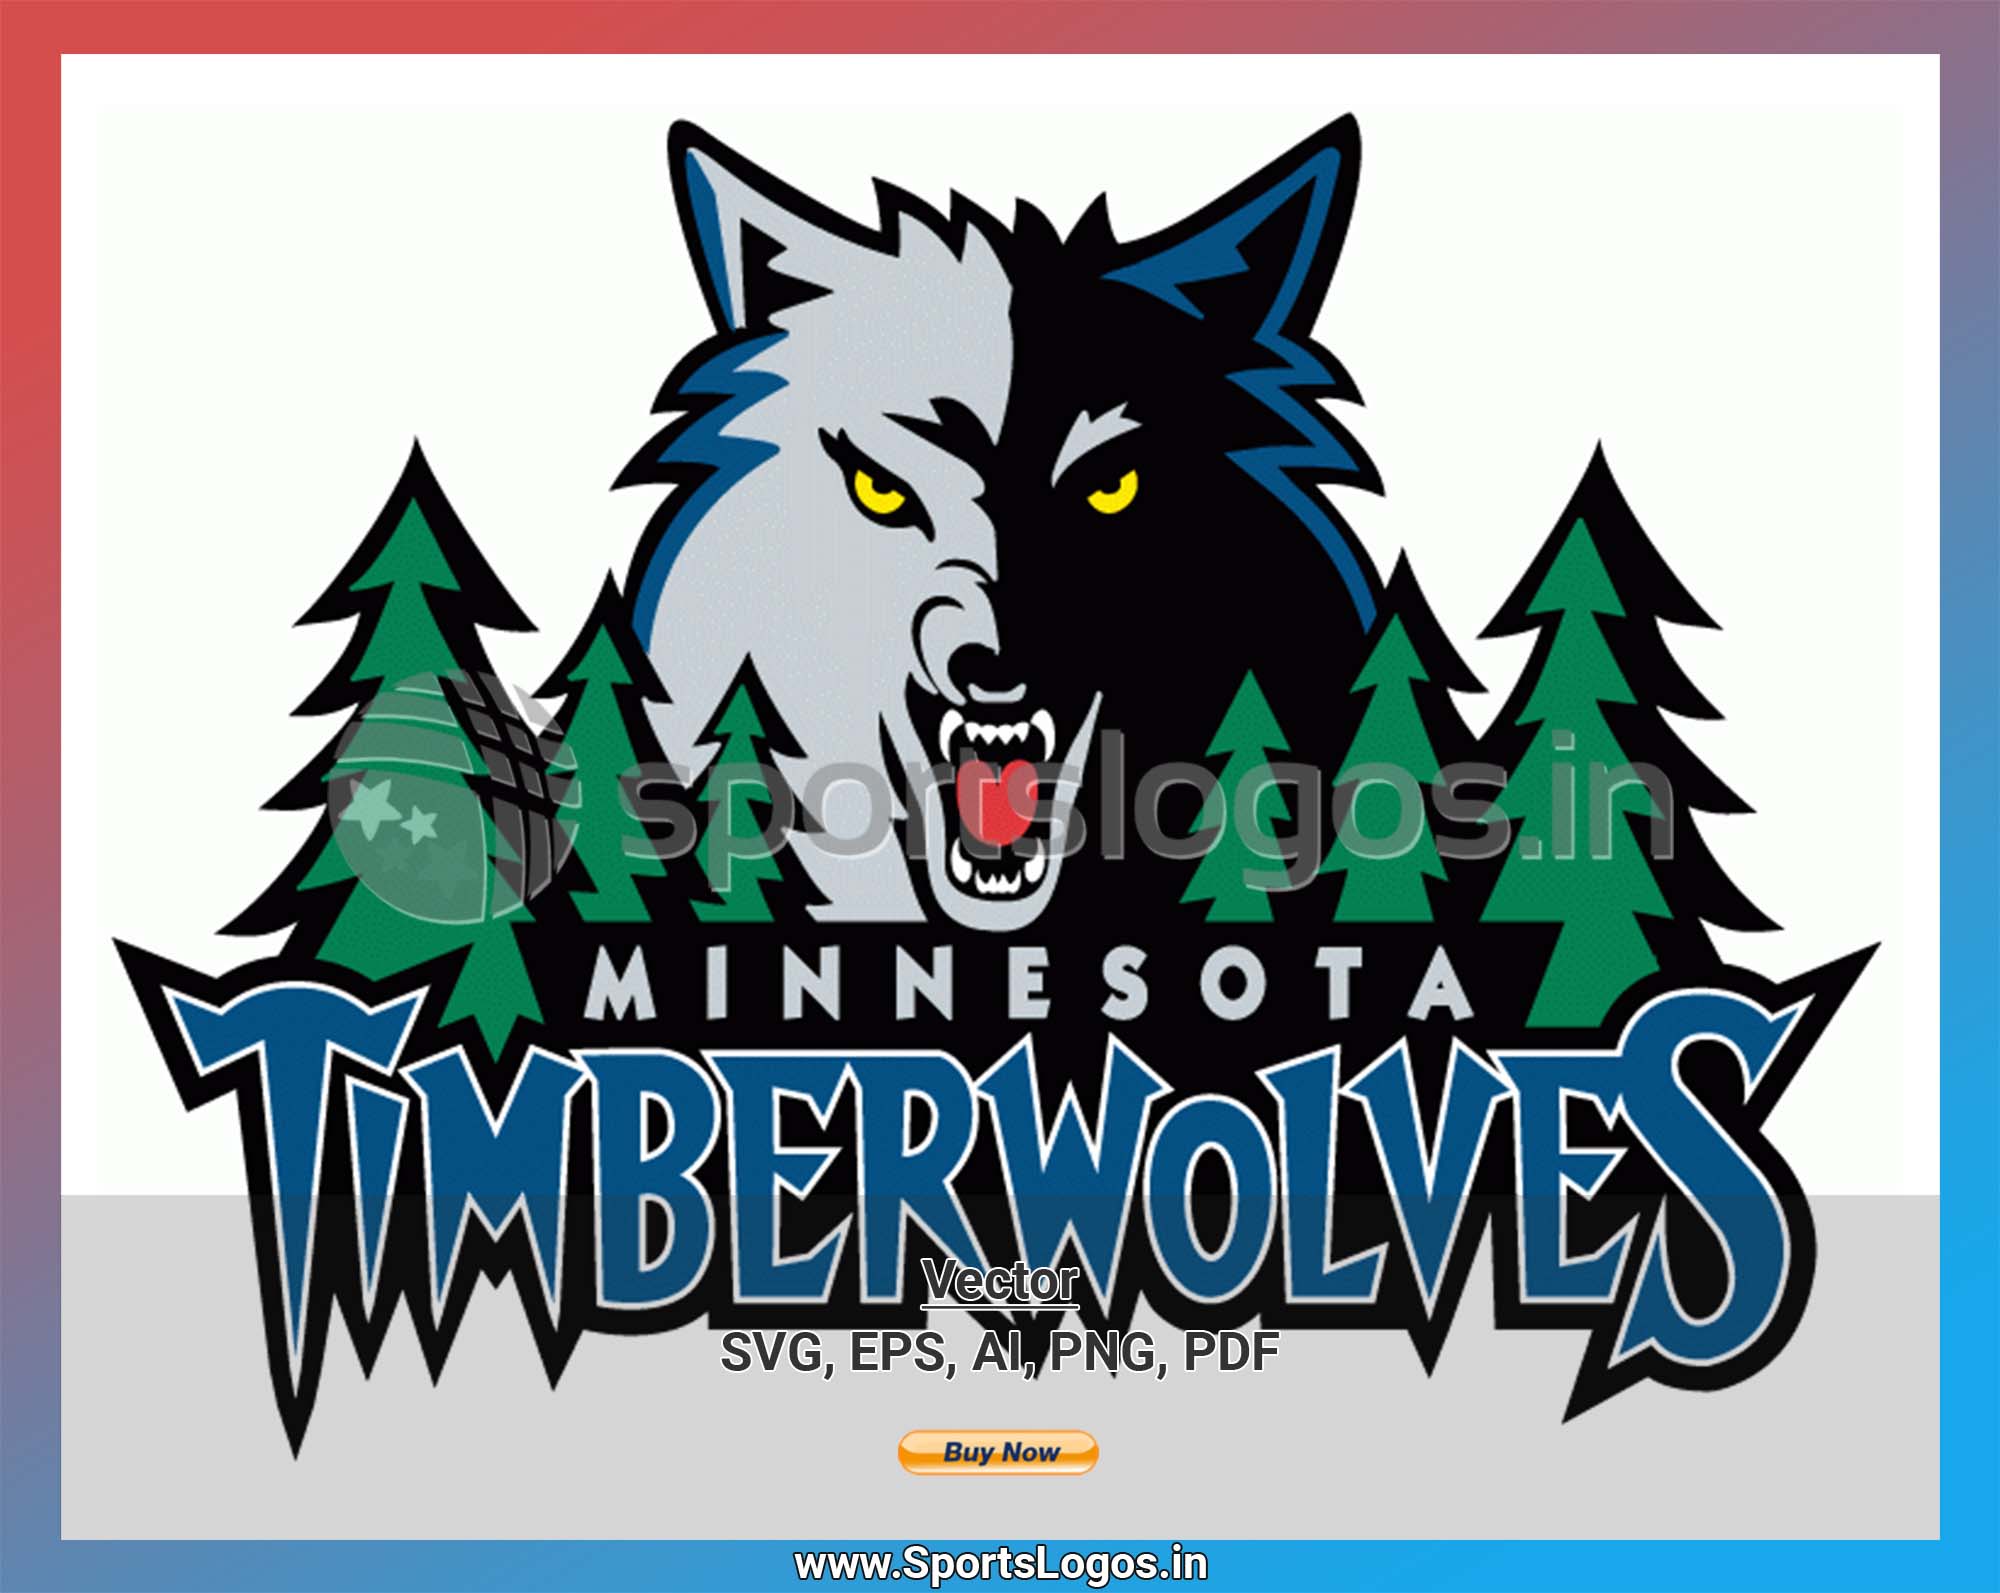 Minnesota Timberwolves NBA Basketball Official Team Logo Poster